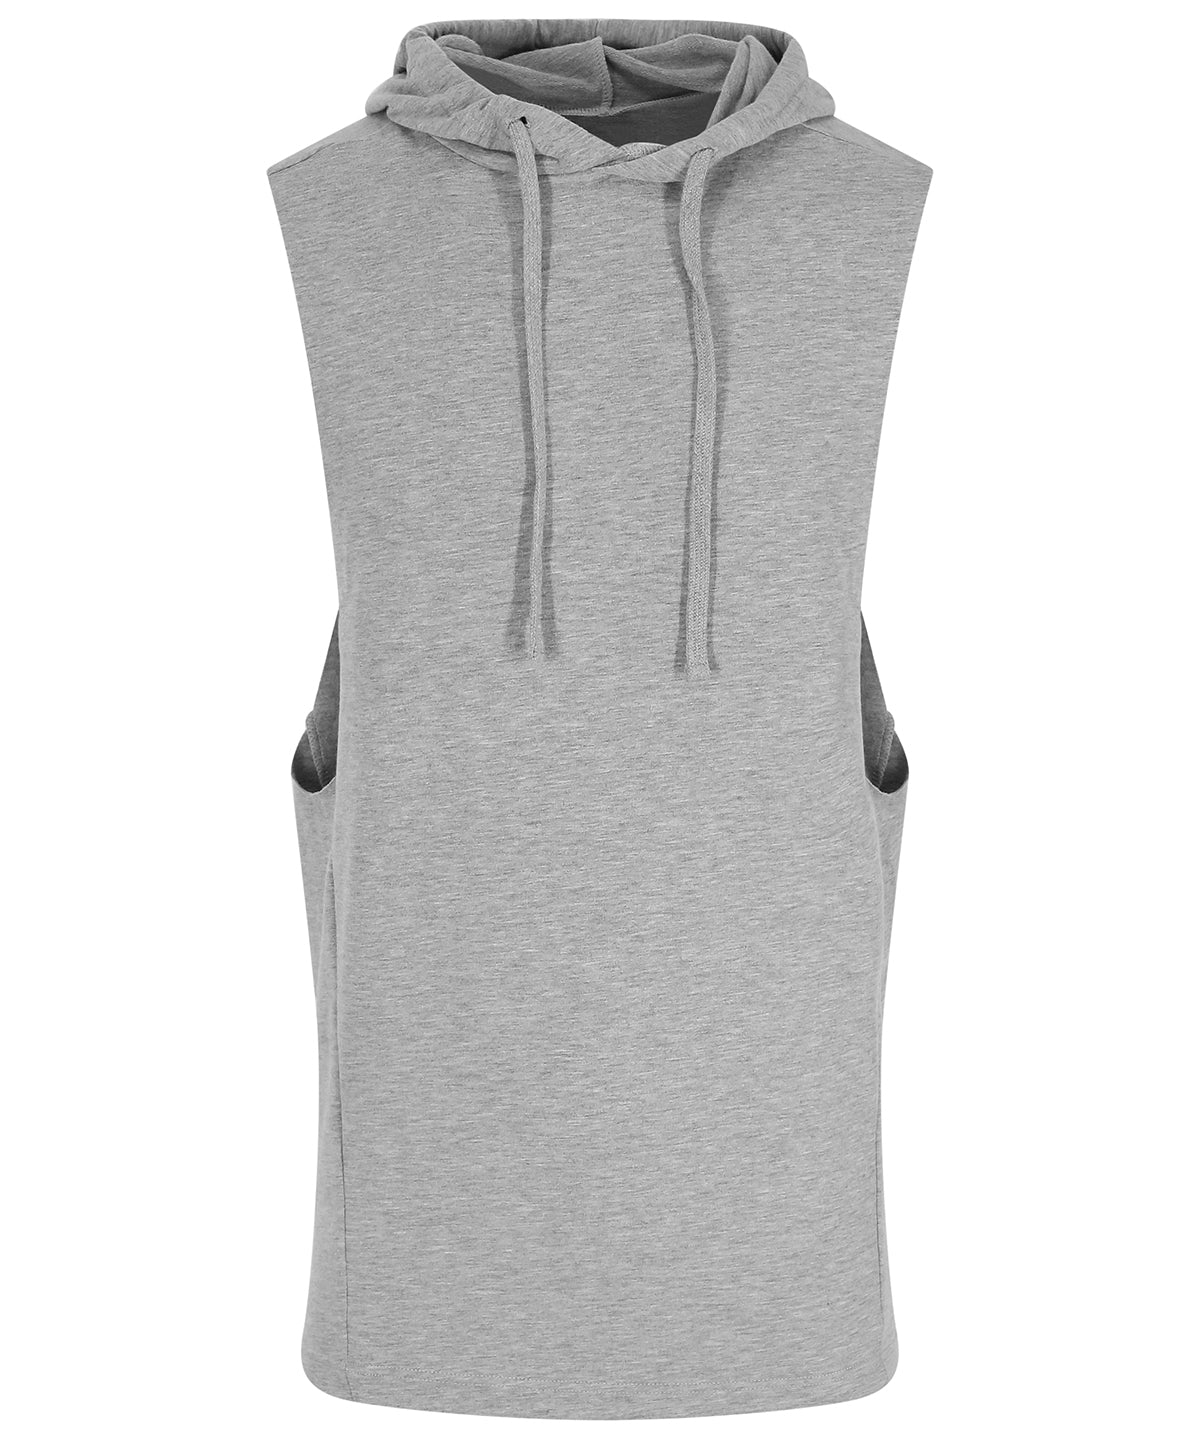 Personalised Vests - Black AWDis Just Cool Urban sleeveless muscle hoodie